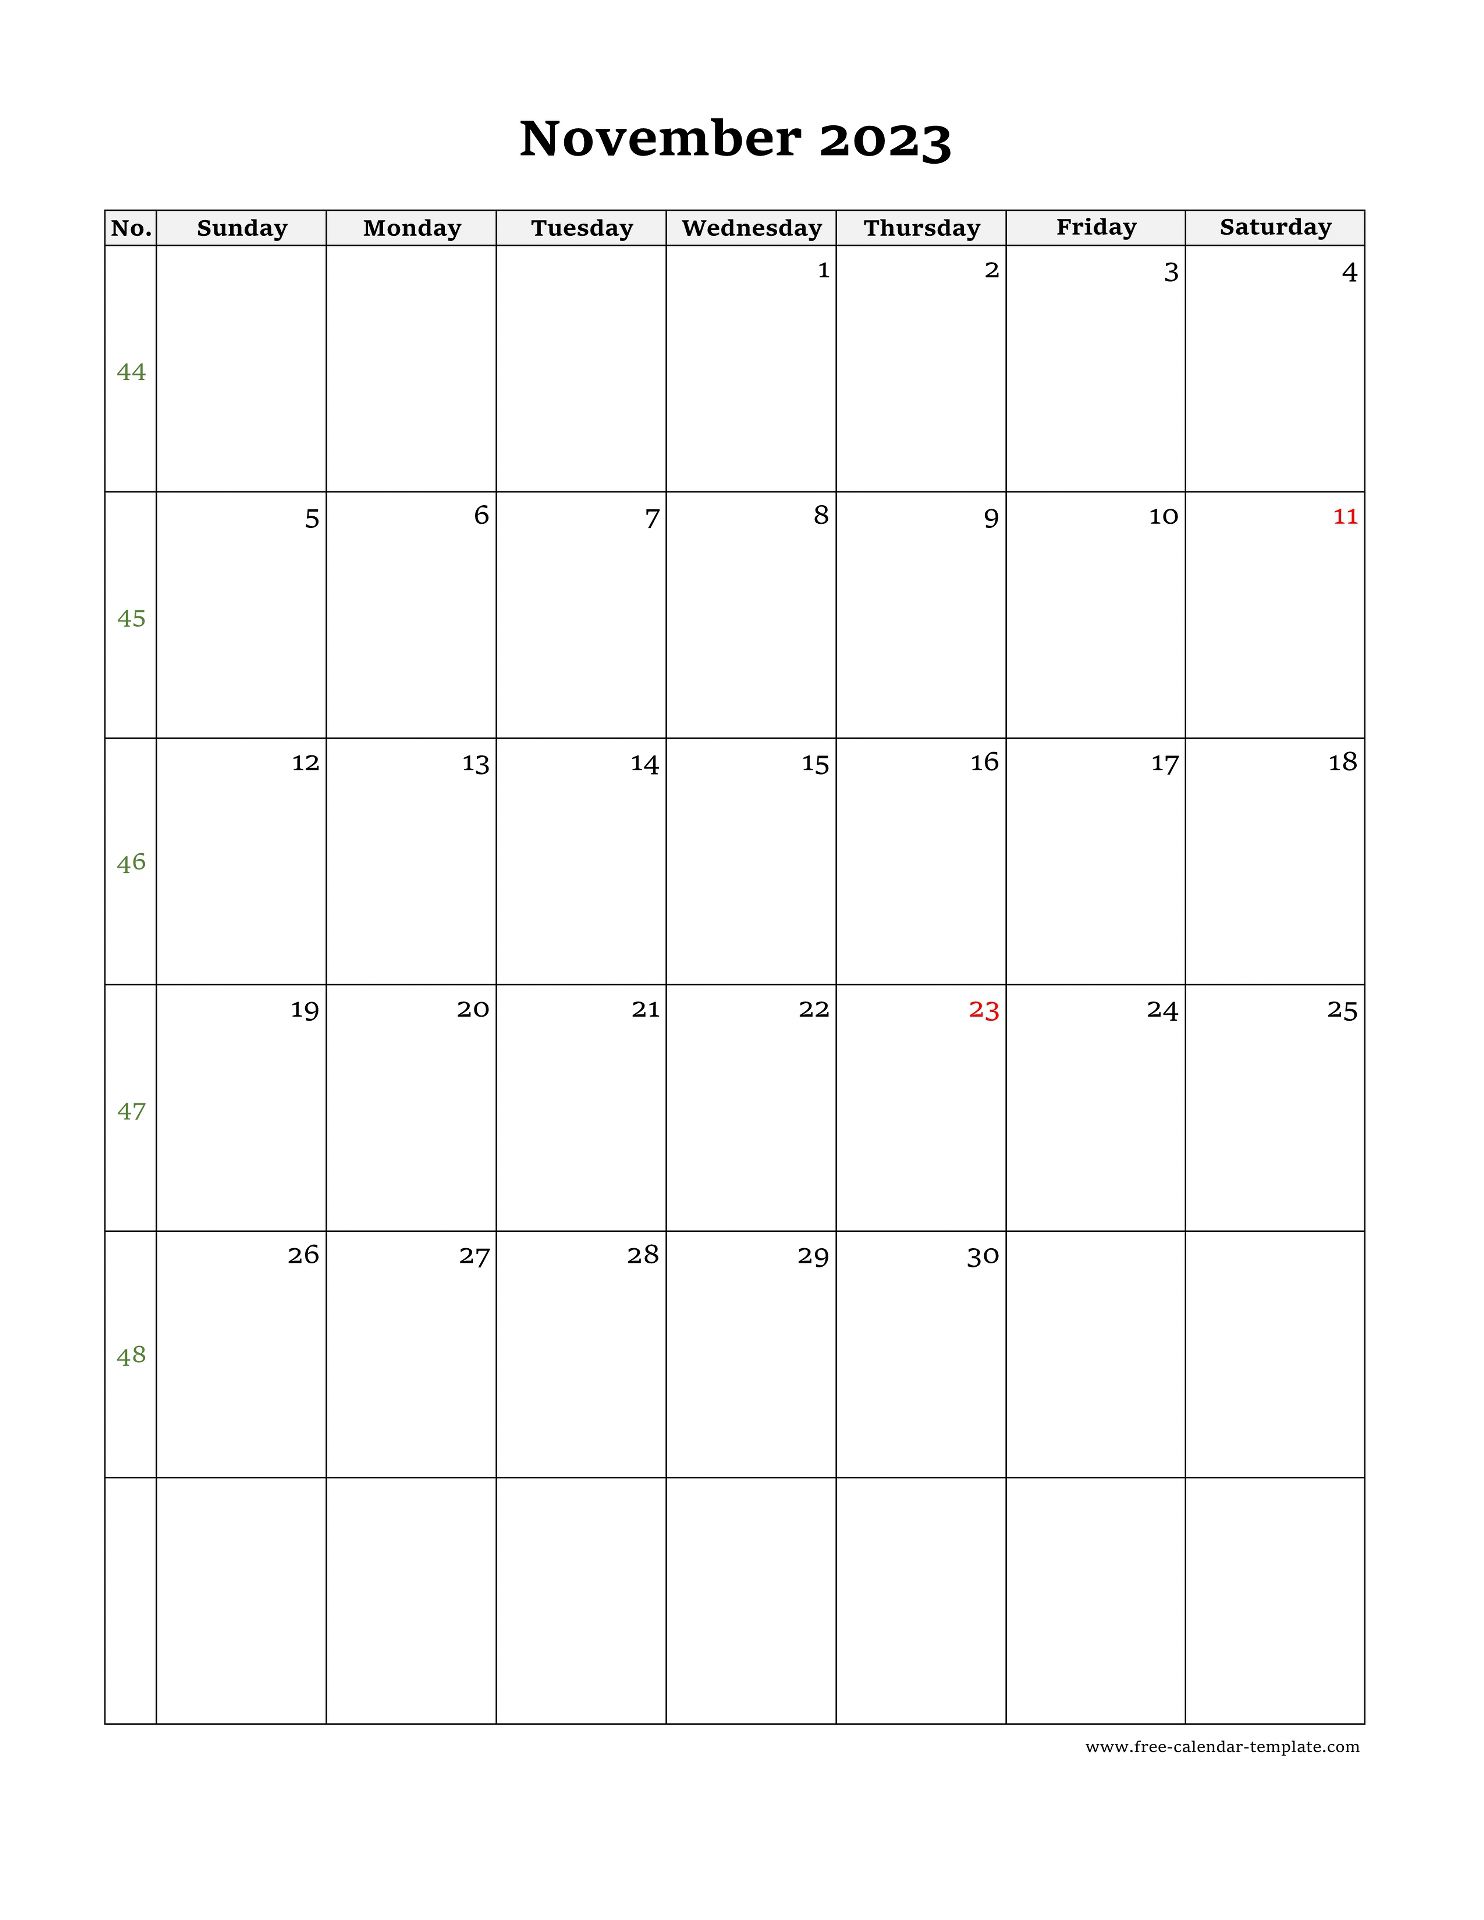 Nov 2023 Calendar Printable Free Calendar 2023 With Federal Holidays